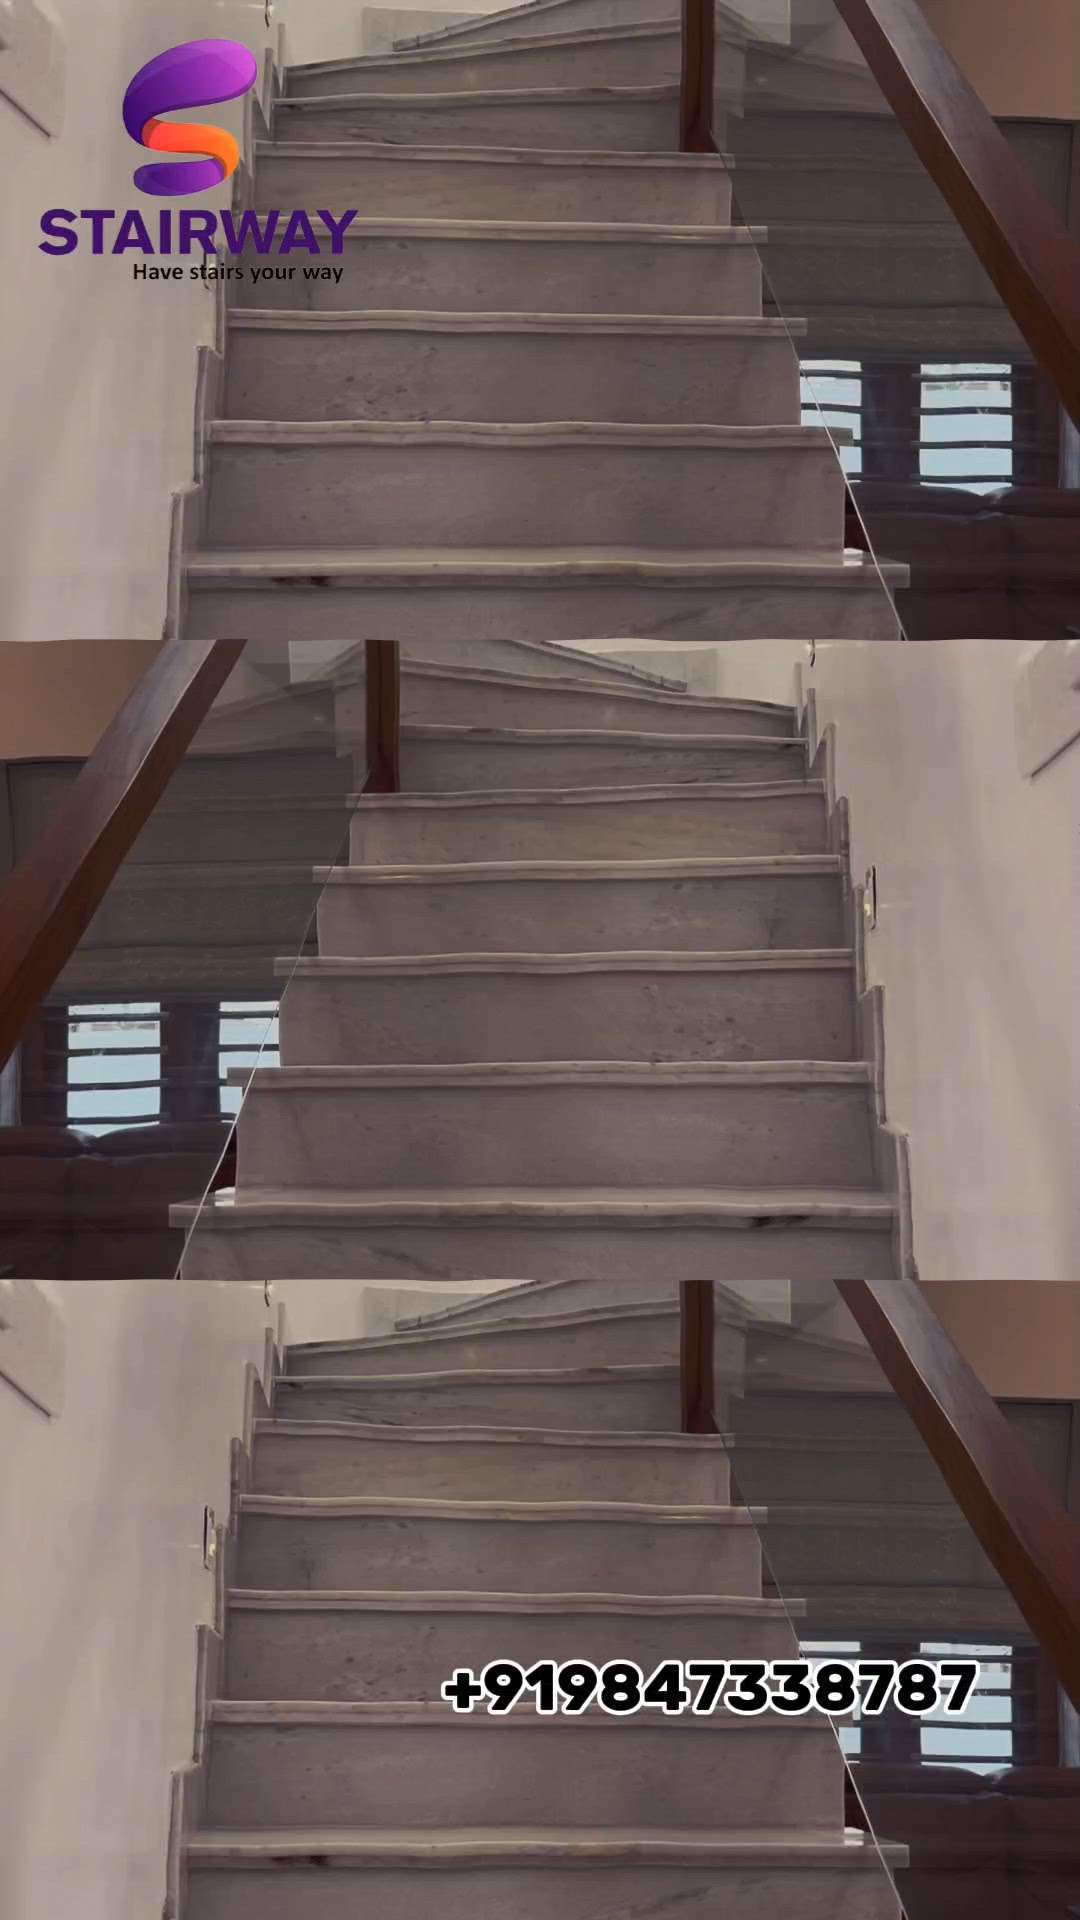 നിങ്ങൾക്കുണ്ടാവില്ലേ സ്വപ്നങ്ങൾ😱
#ZMaxStairSolutions #elevateyourspace❤️ #stairs #stairway #homedecor #home #house #wood #steel #aluminium #stairdesign #stairwalkers #stairworkout #stairwork #kondotty #kozhikode #ramanattukara #zmax #post #newpost #stairwell #design #ushapedstairs #spiralstairs #splitstaircase #lshapestairs #StraightStaircase  #HomeDecor  #mlappuraminteriors  #kannurdesigner  #thissur #stairwork